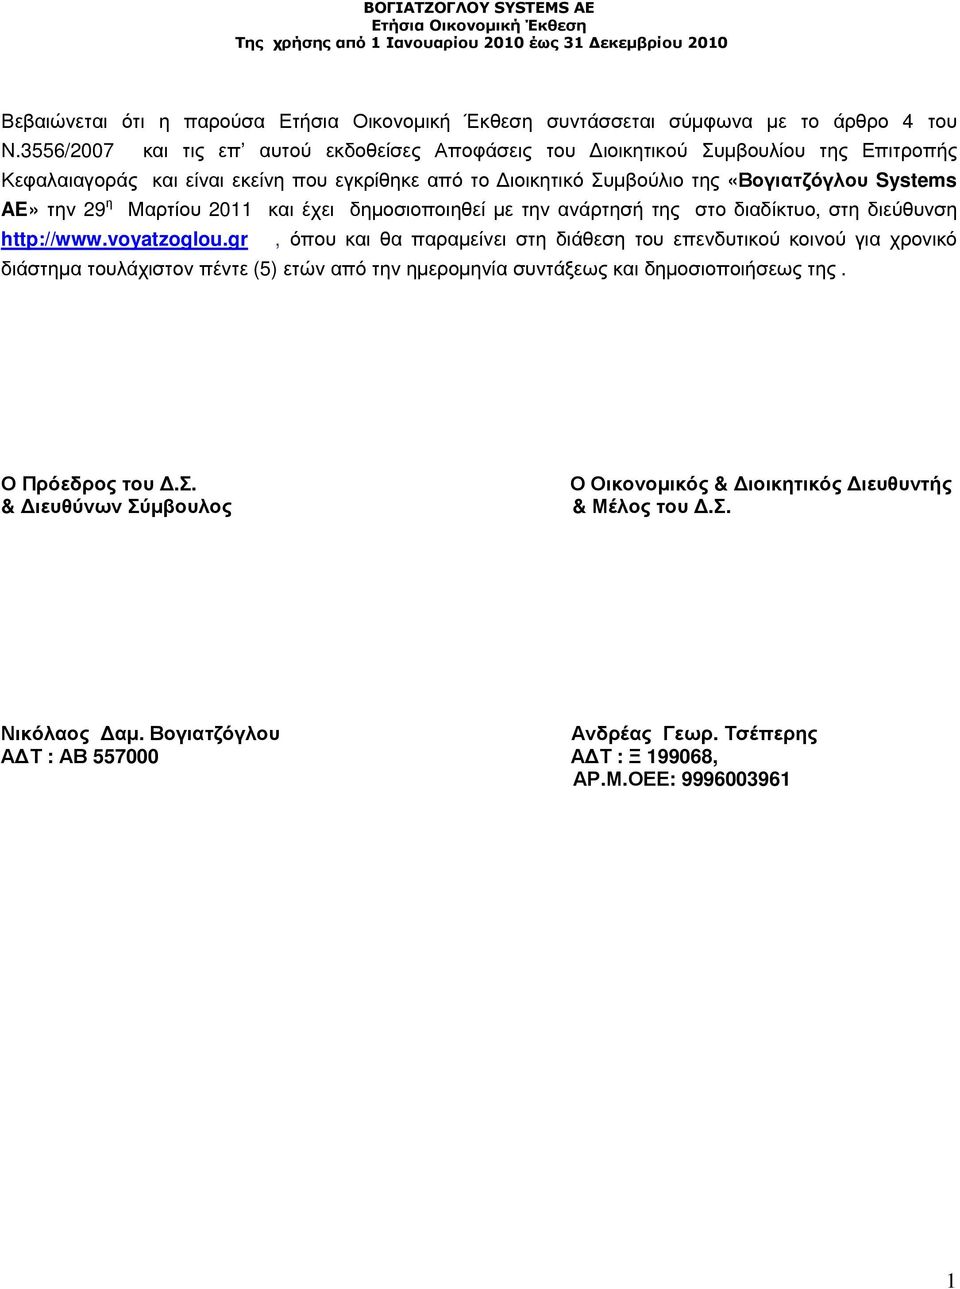 Systems AE» την 29 η Μαρτίου 2011 και έχει δηµοσιοποιηθεί µε την ανάρτησή της στο διαδίκτυο, στη διεύθυνση http://www.voyatzoglou.